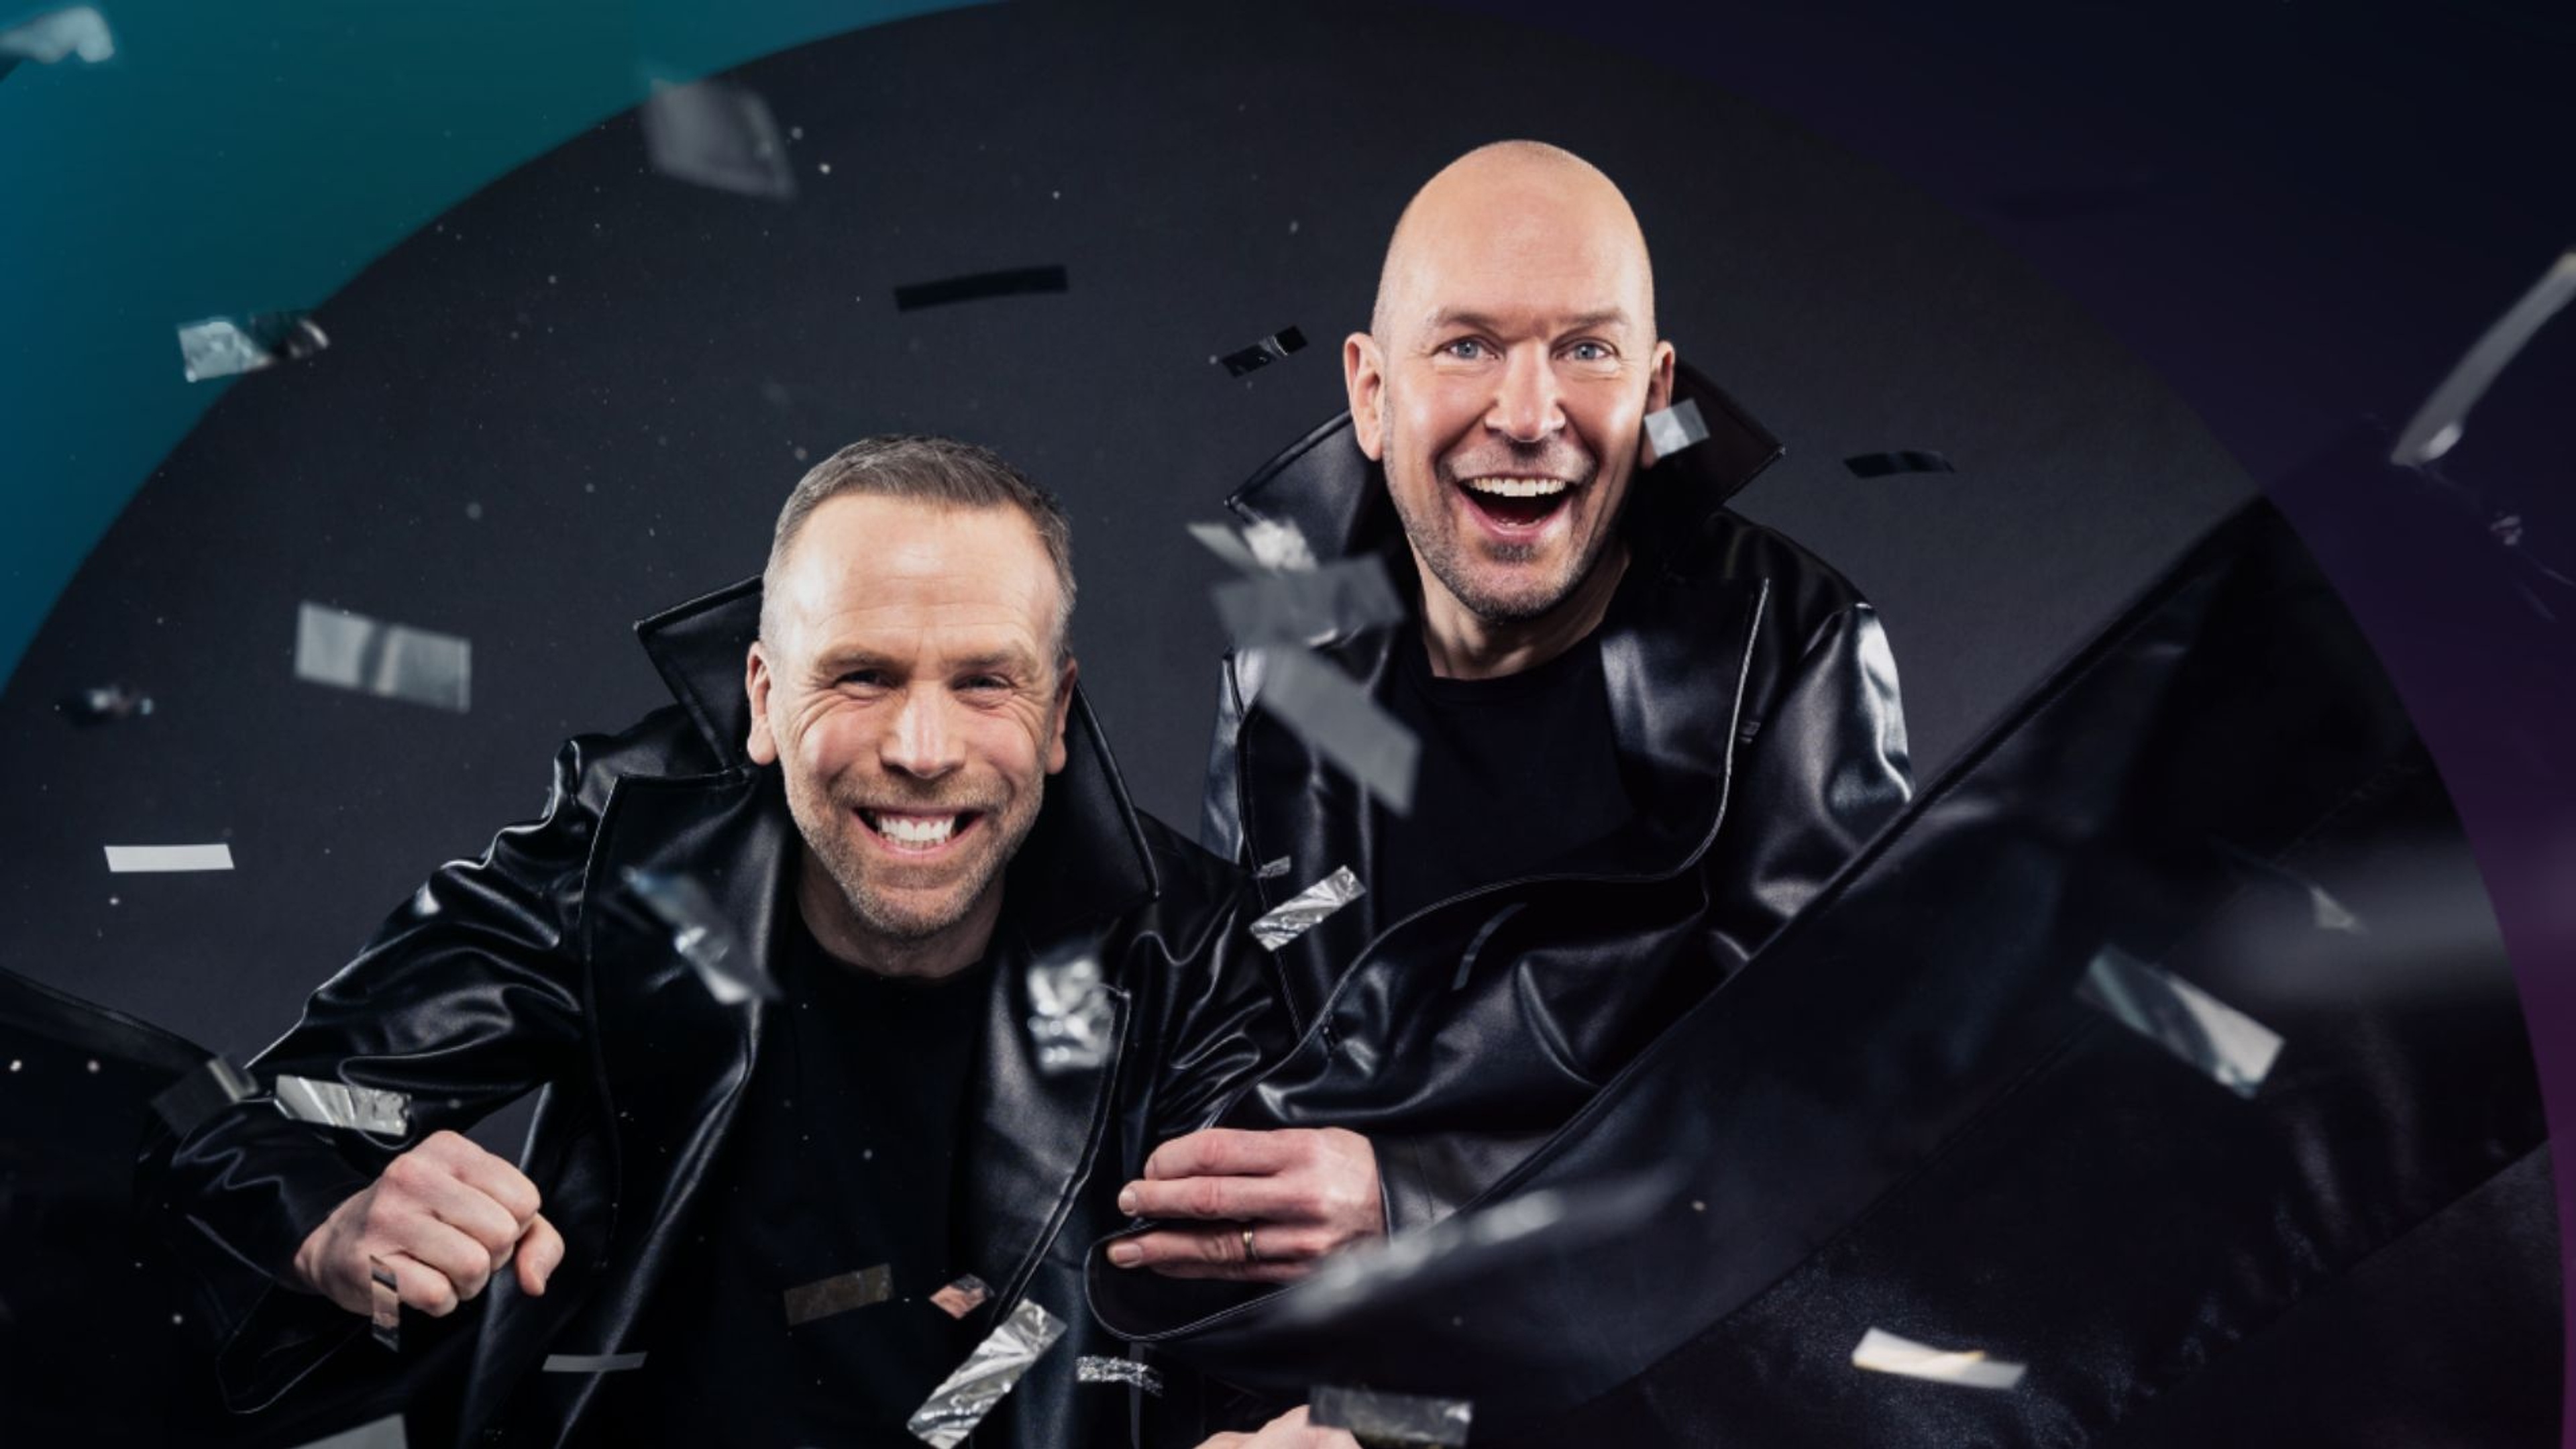 Halvkroppsbild Johan Östling till vänster, Björn Ling till höger iklädda svarta rockar, i luften flyger konfetti. 